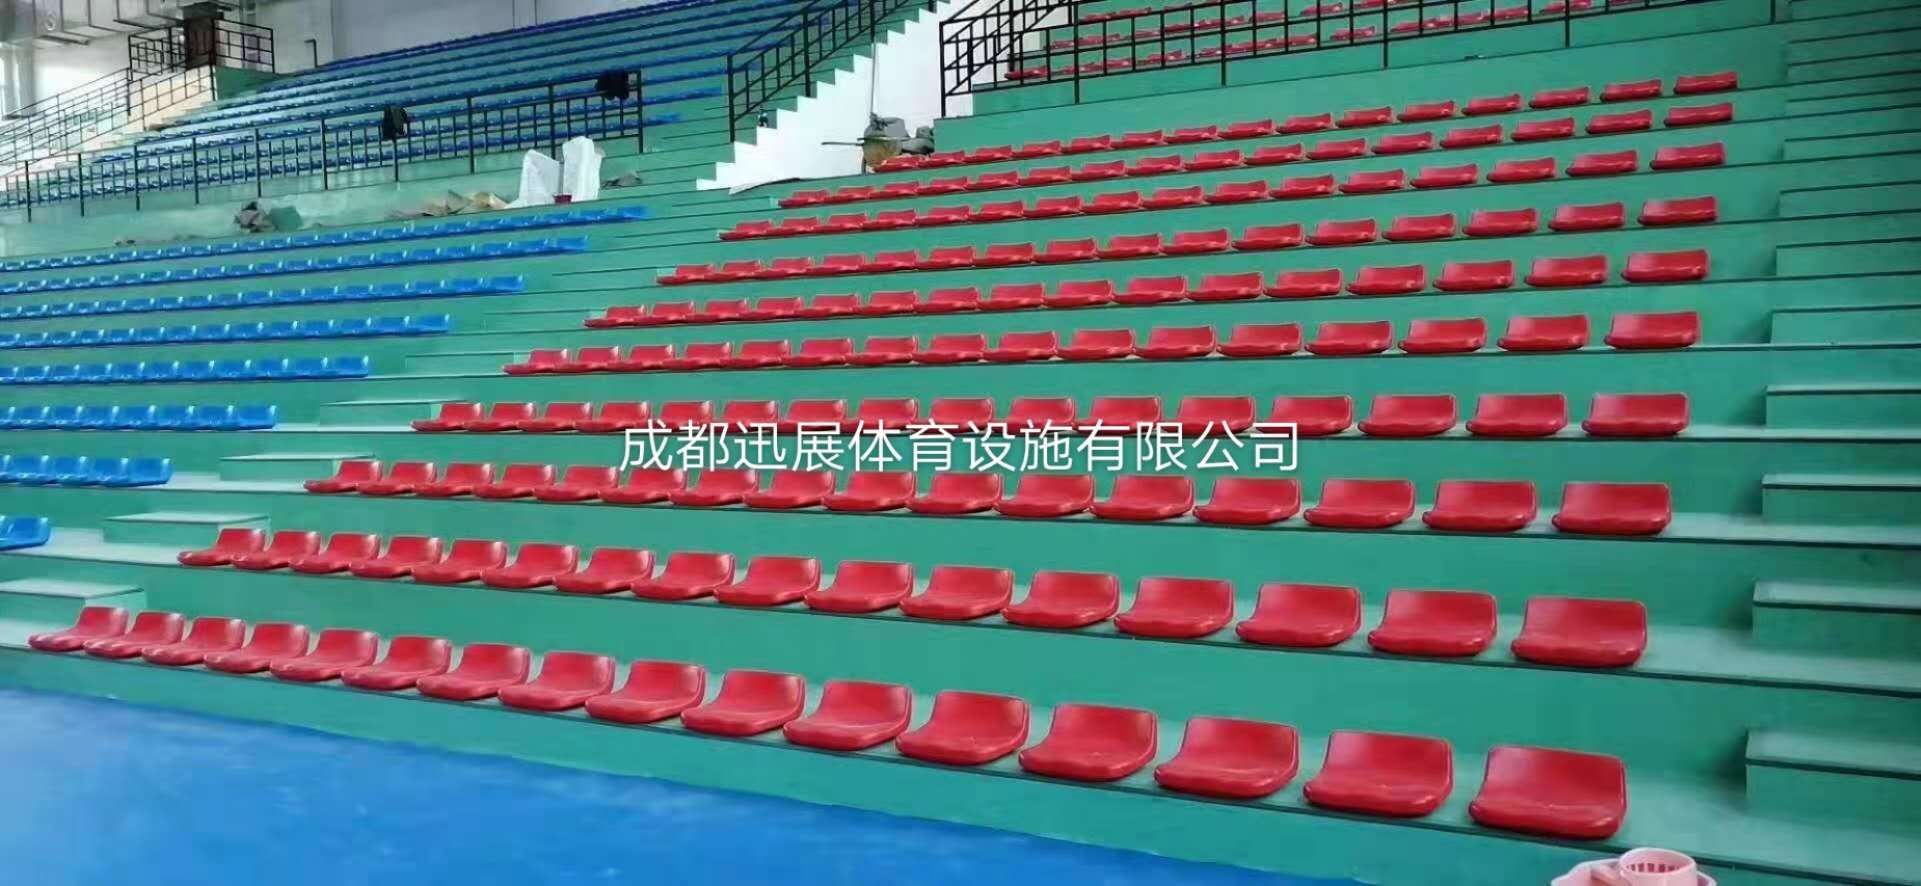 球场看台椅 可定制 成都迅展体育设施 体育馆座椅 看台座椅 观众看台椅 伸缩看台座椅5